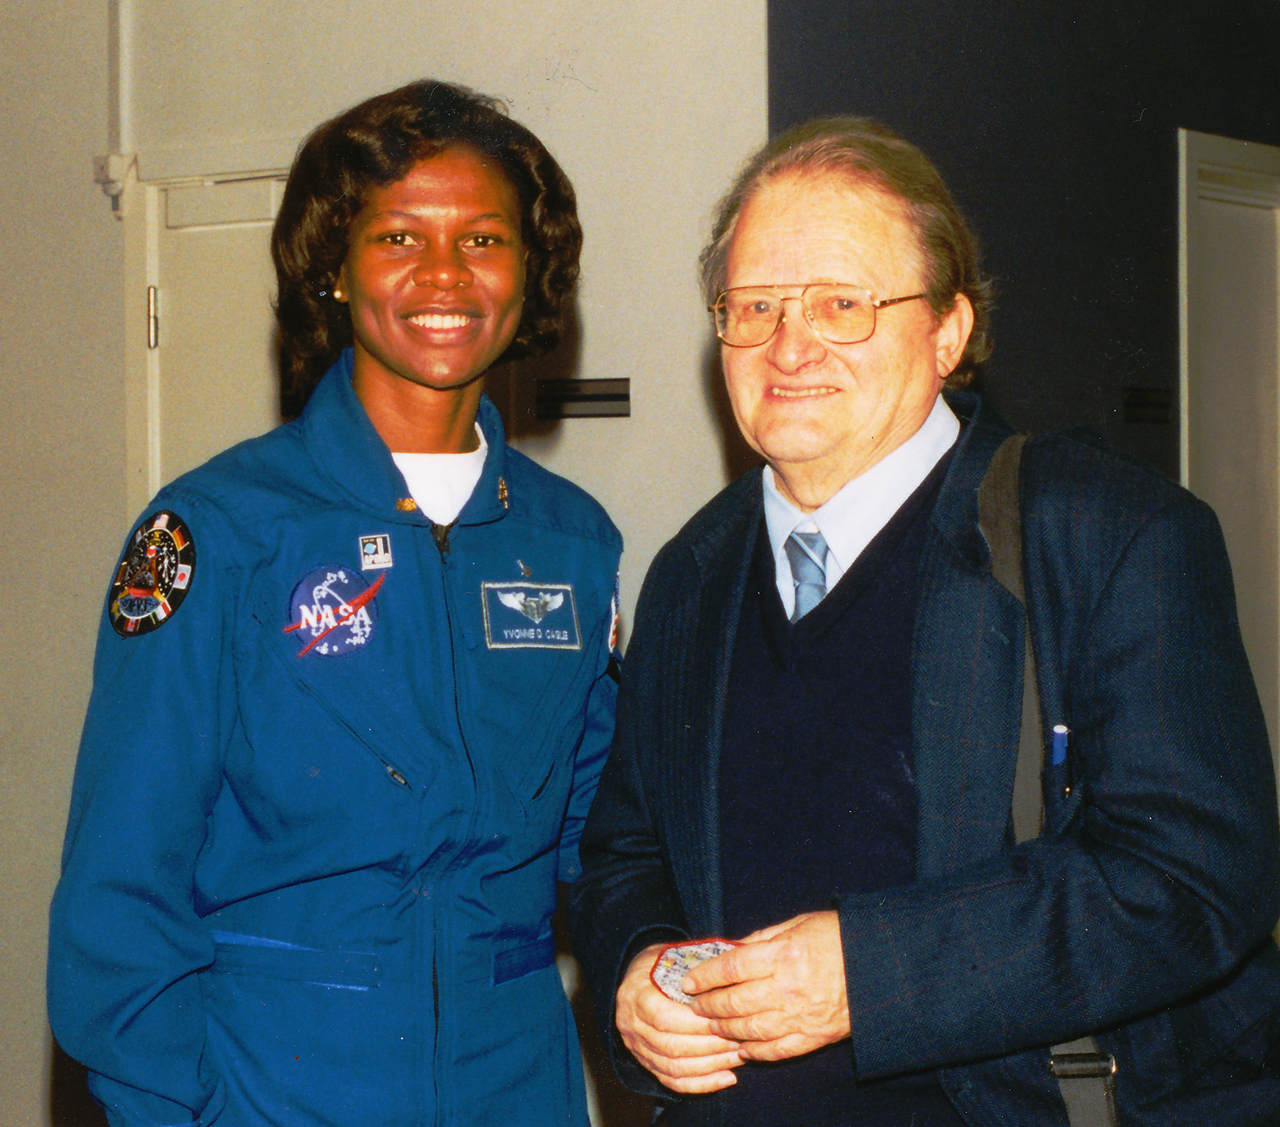 Jens Martin Knudsen sammen med en amerikansk NASA-astronaut